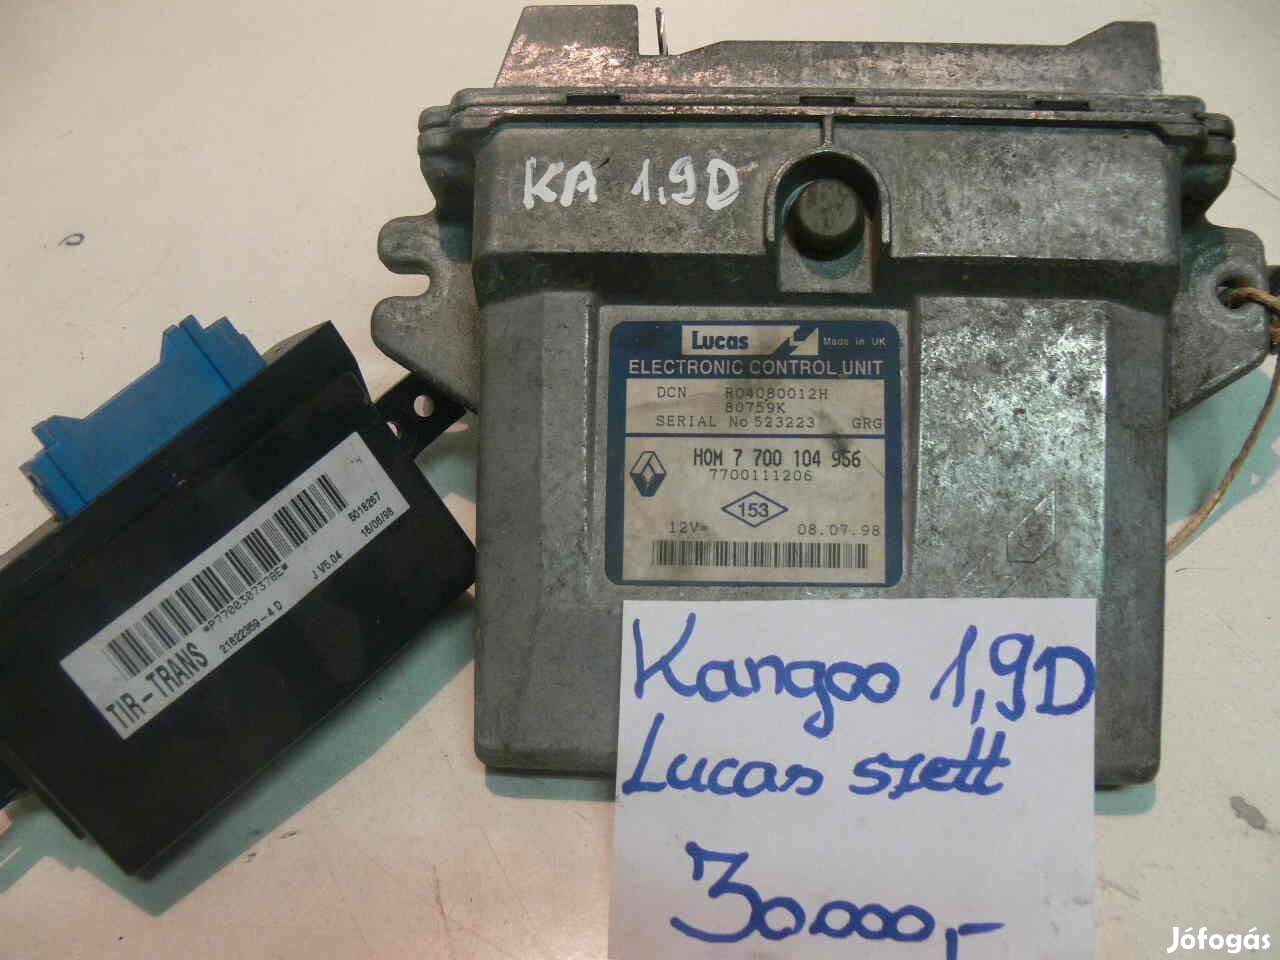 Kangoo 1.9D Lucas komputer szett